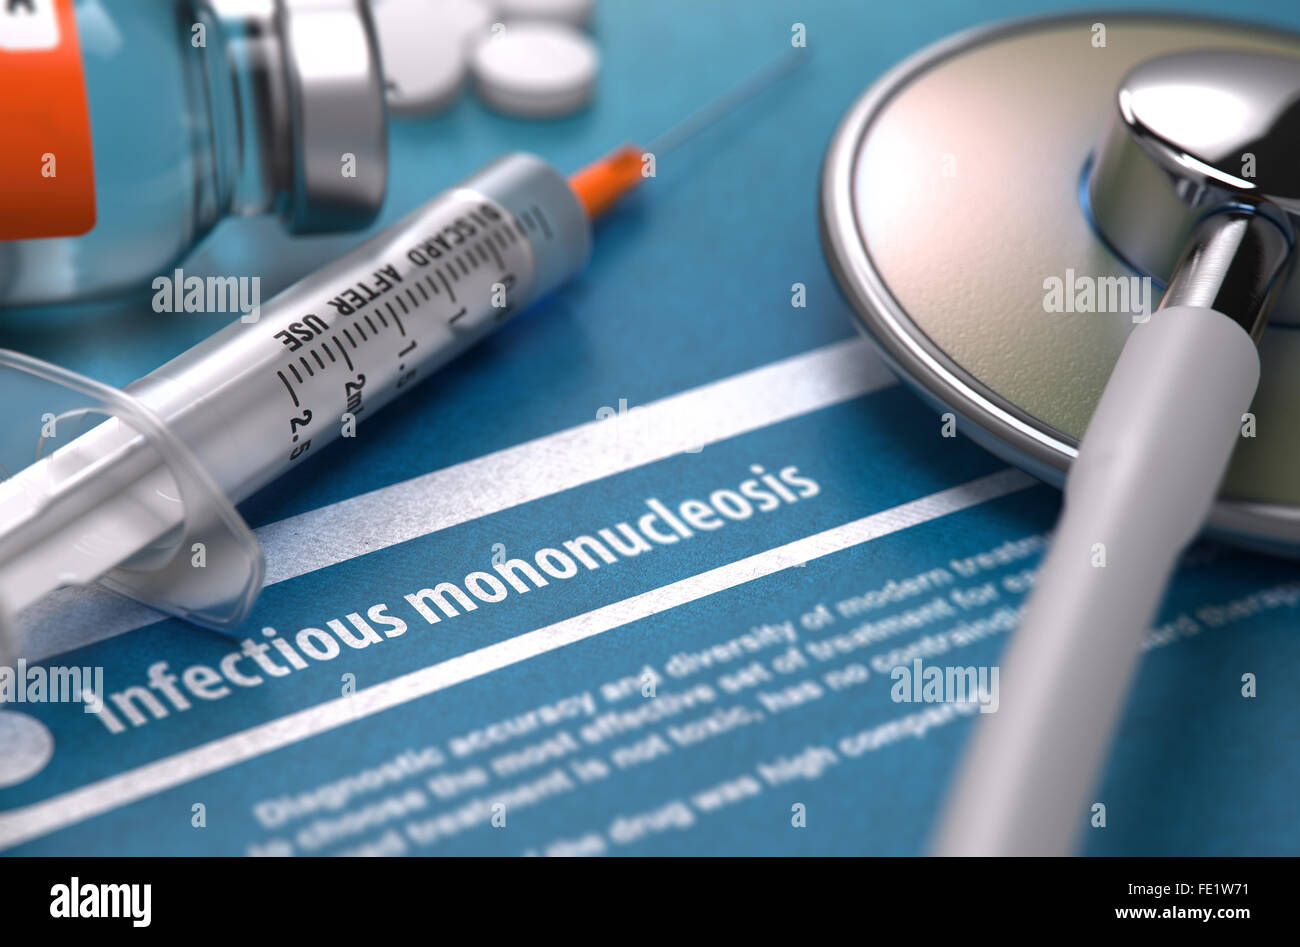 Diagnosis - Infectious mononucleosis. Medical Concept. Stock Photo